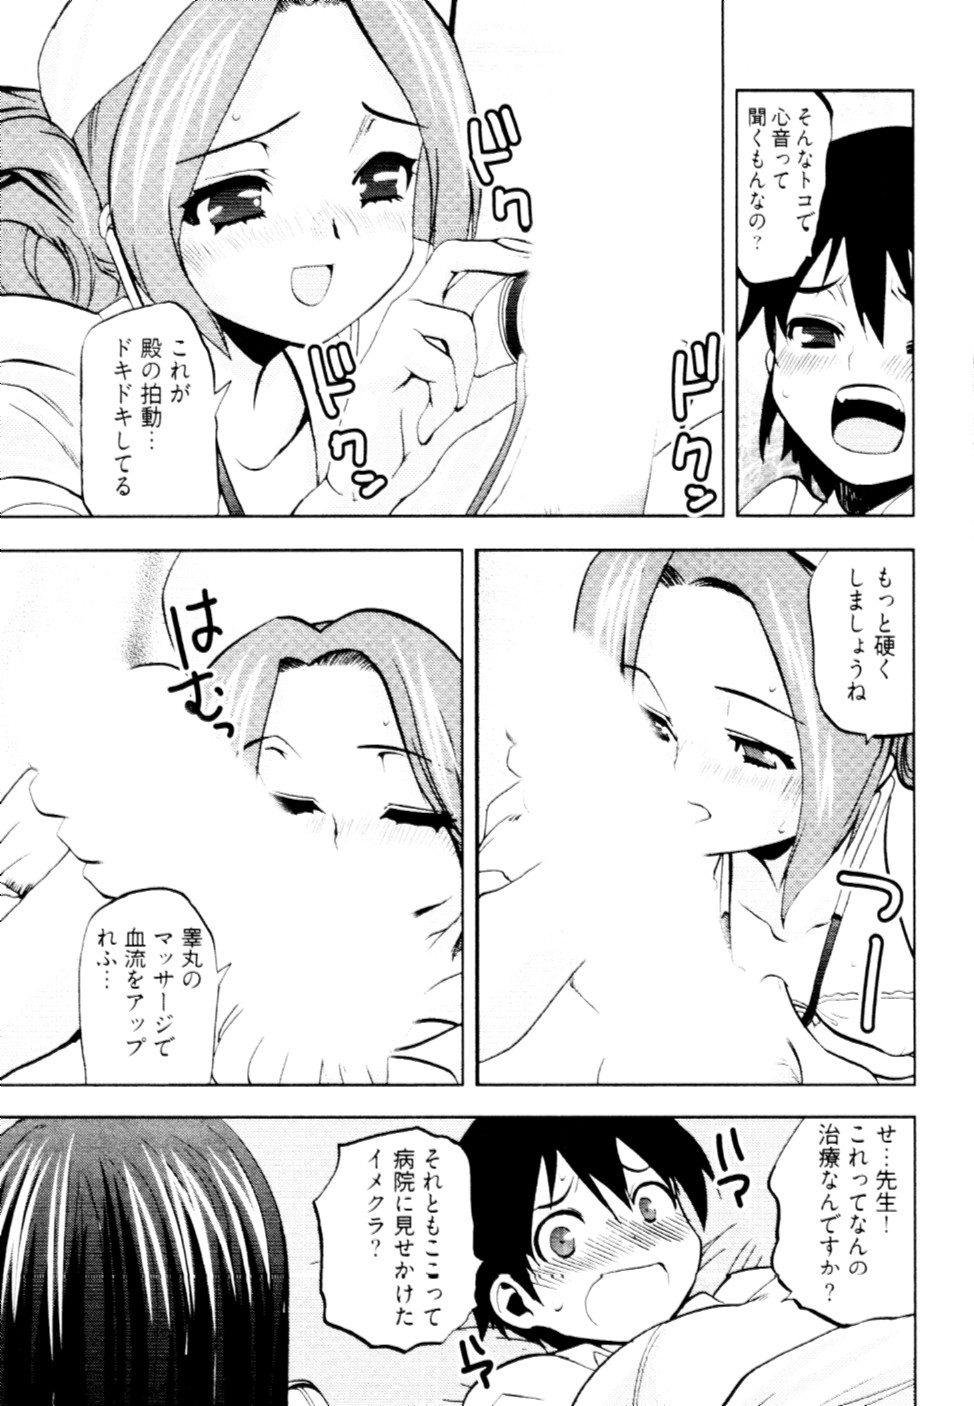 [Togami Shin] Tonosama no Nanahon yari Vol.2 page 38 full